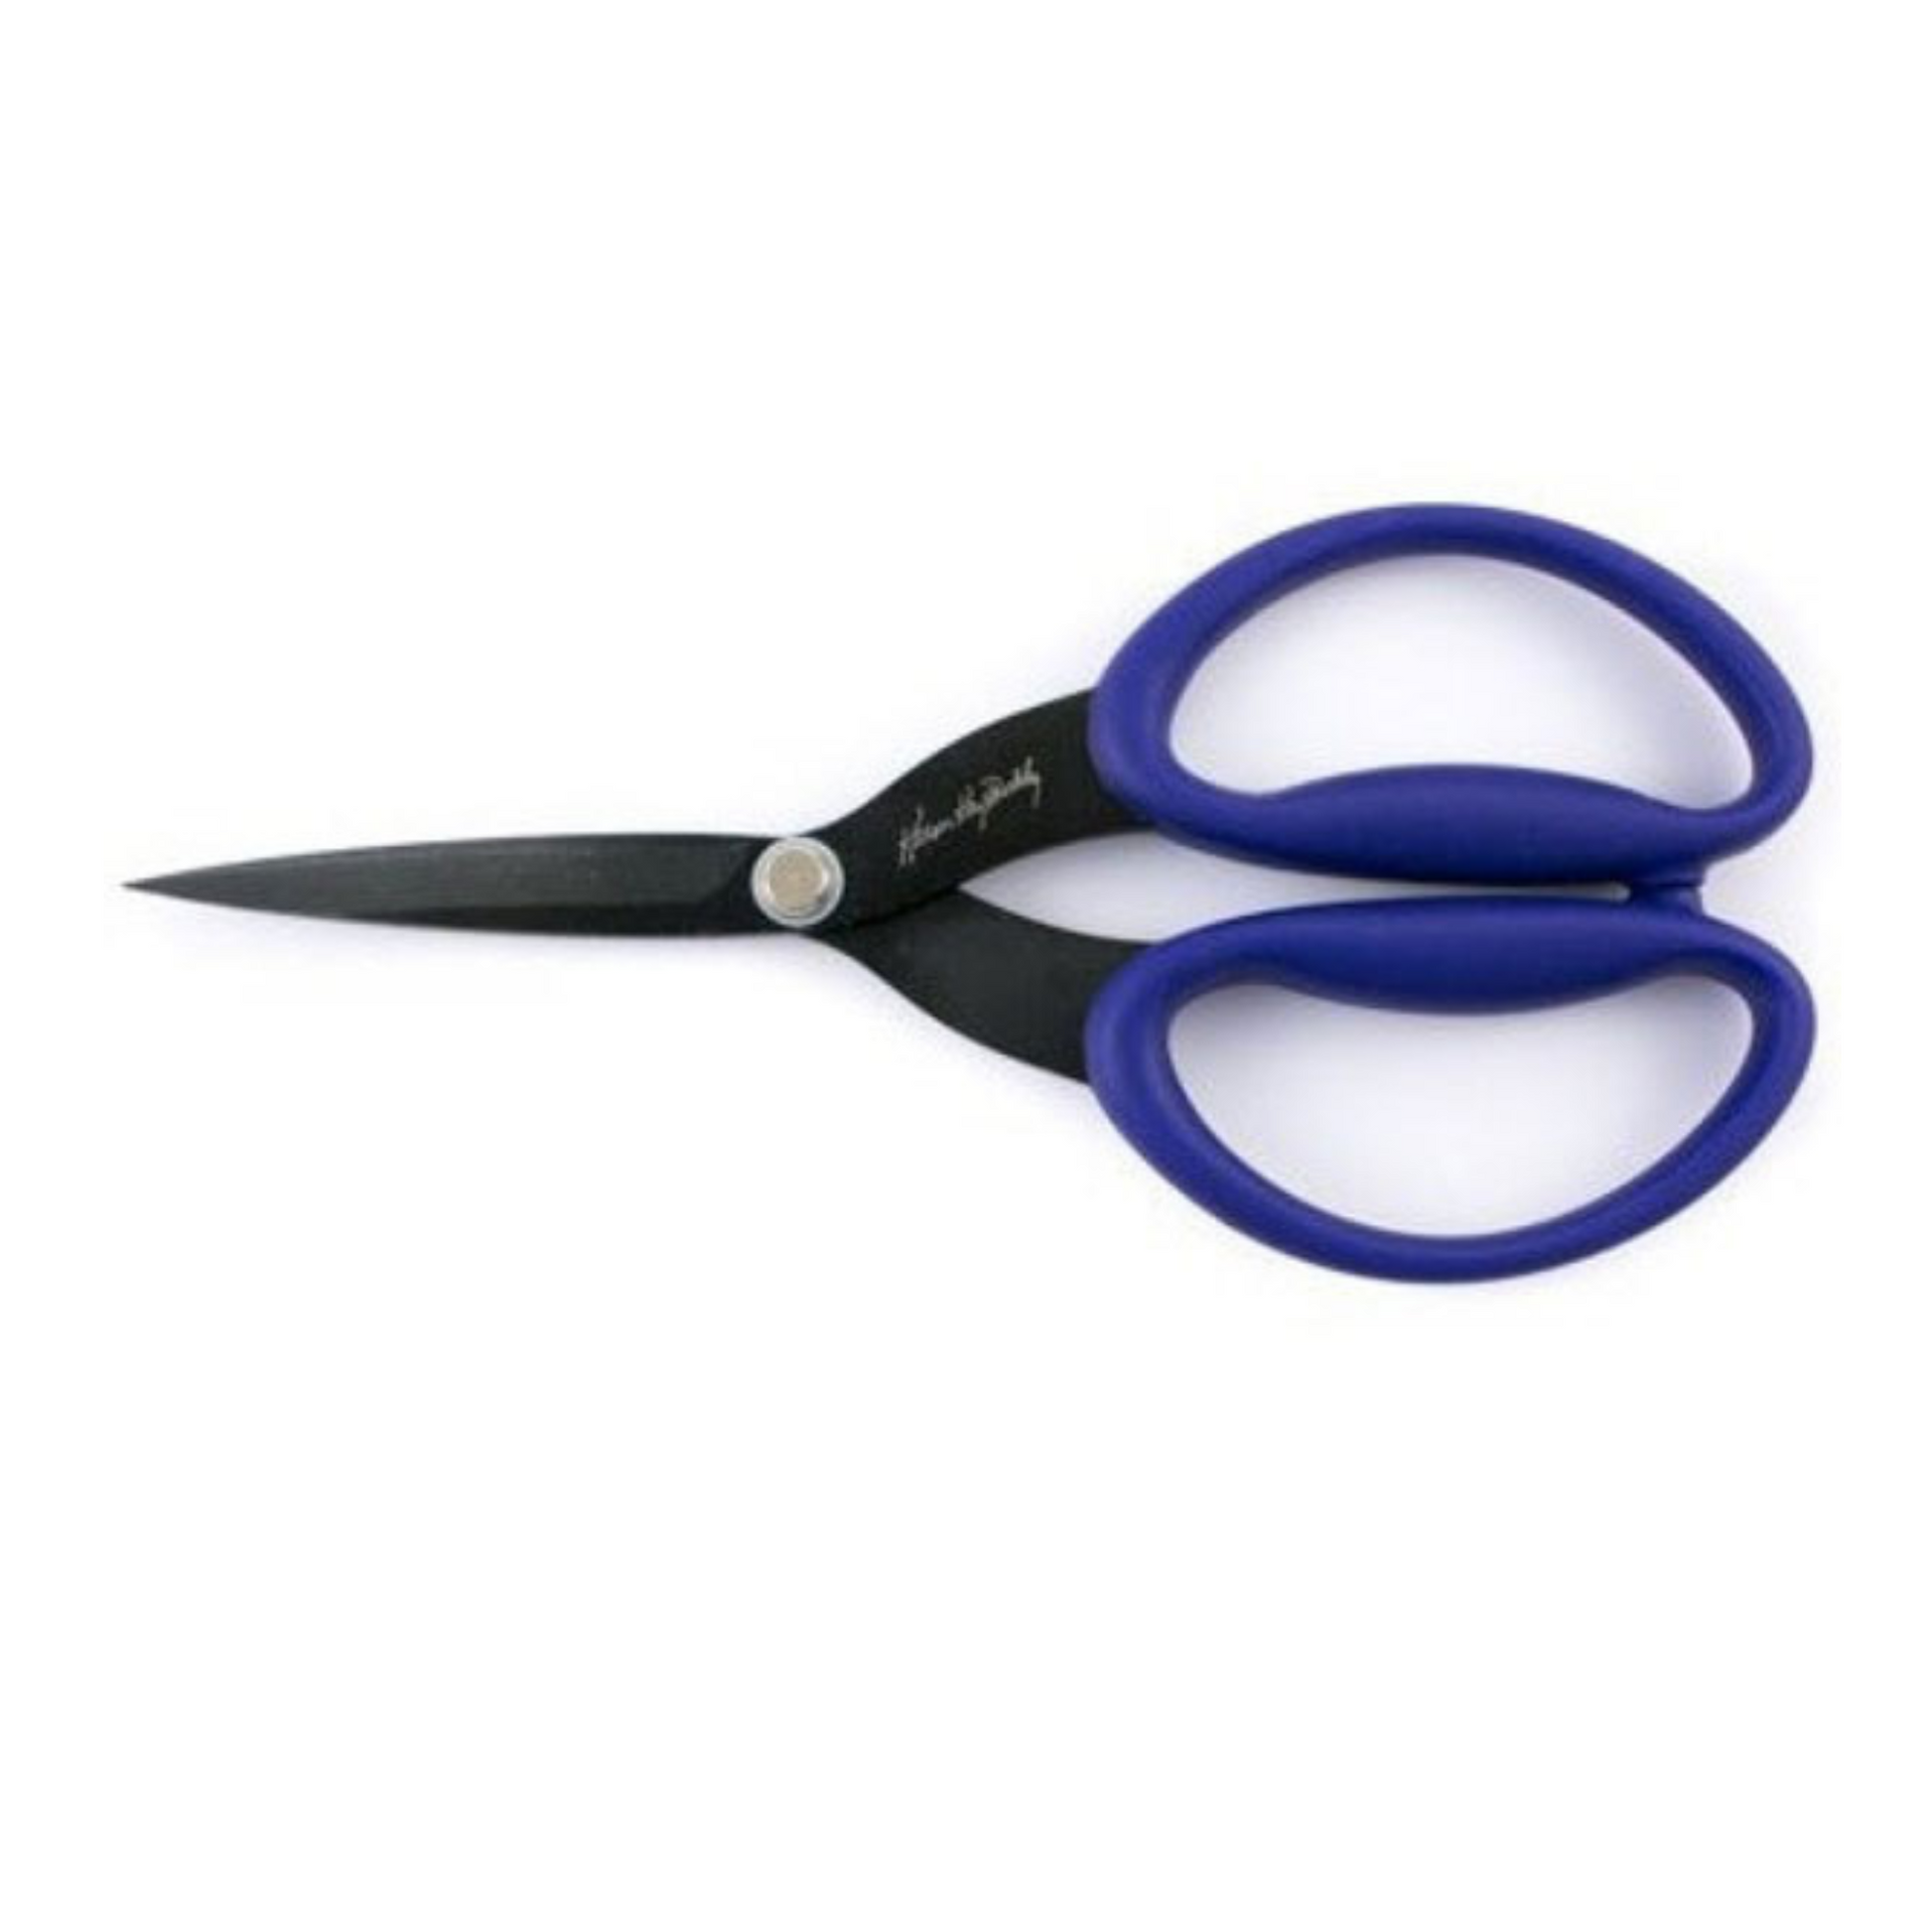 Karen Kay buckley large purple scissors with blade guard